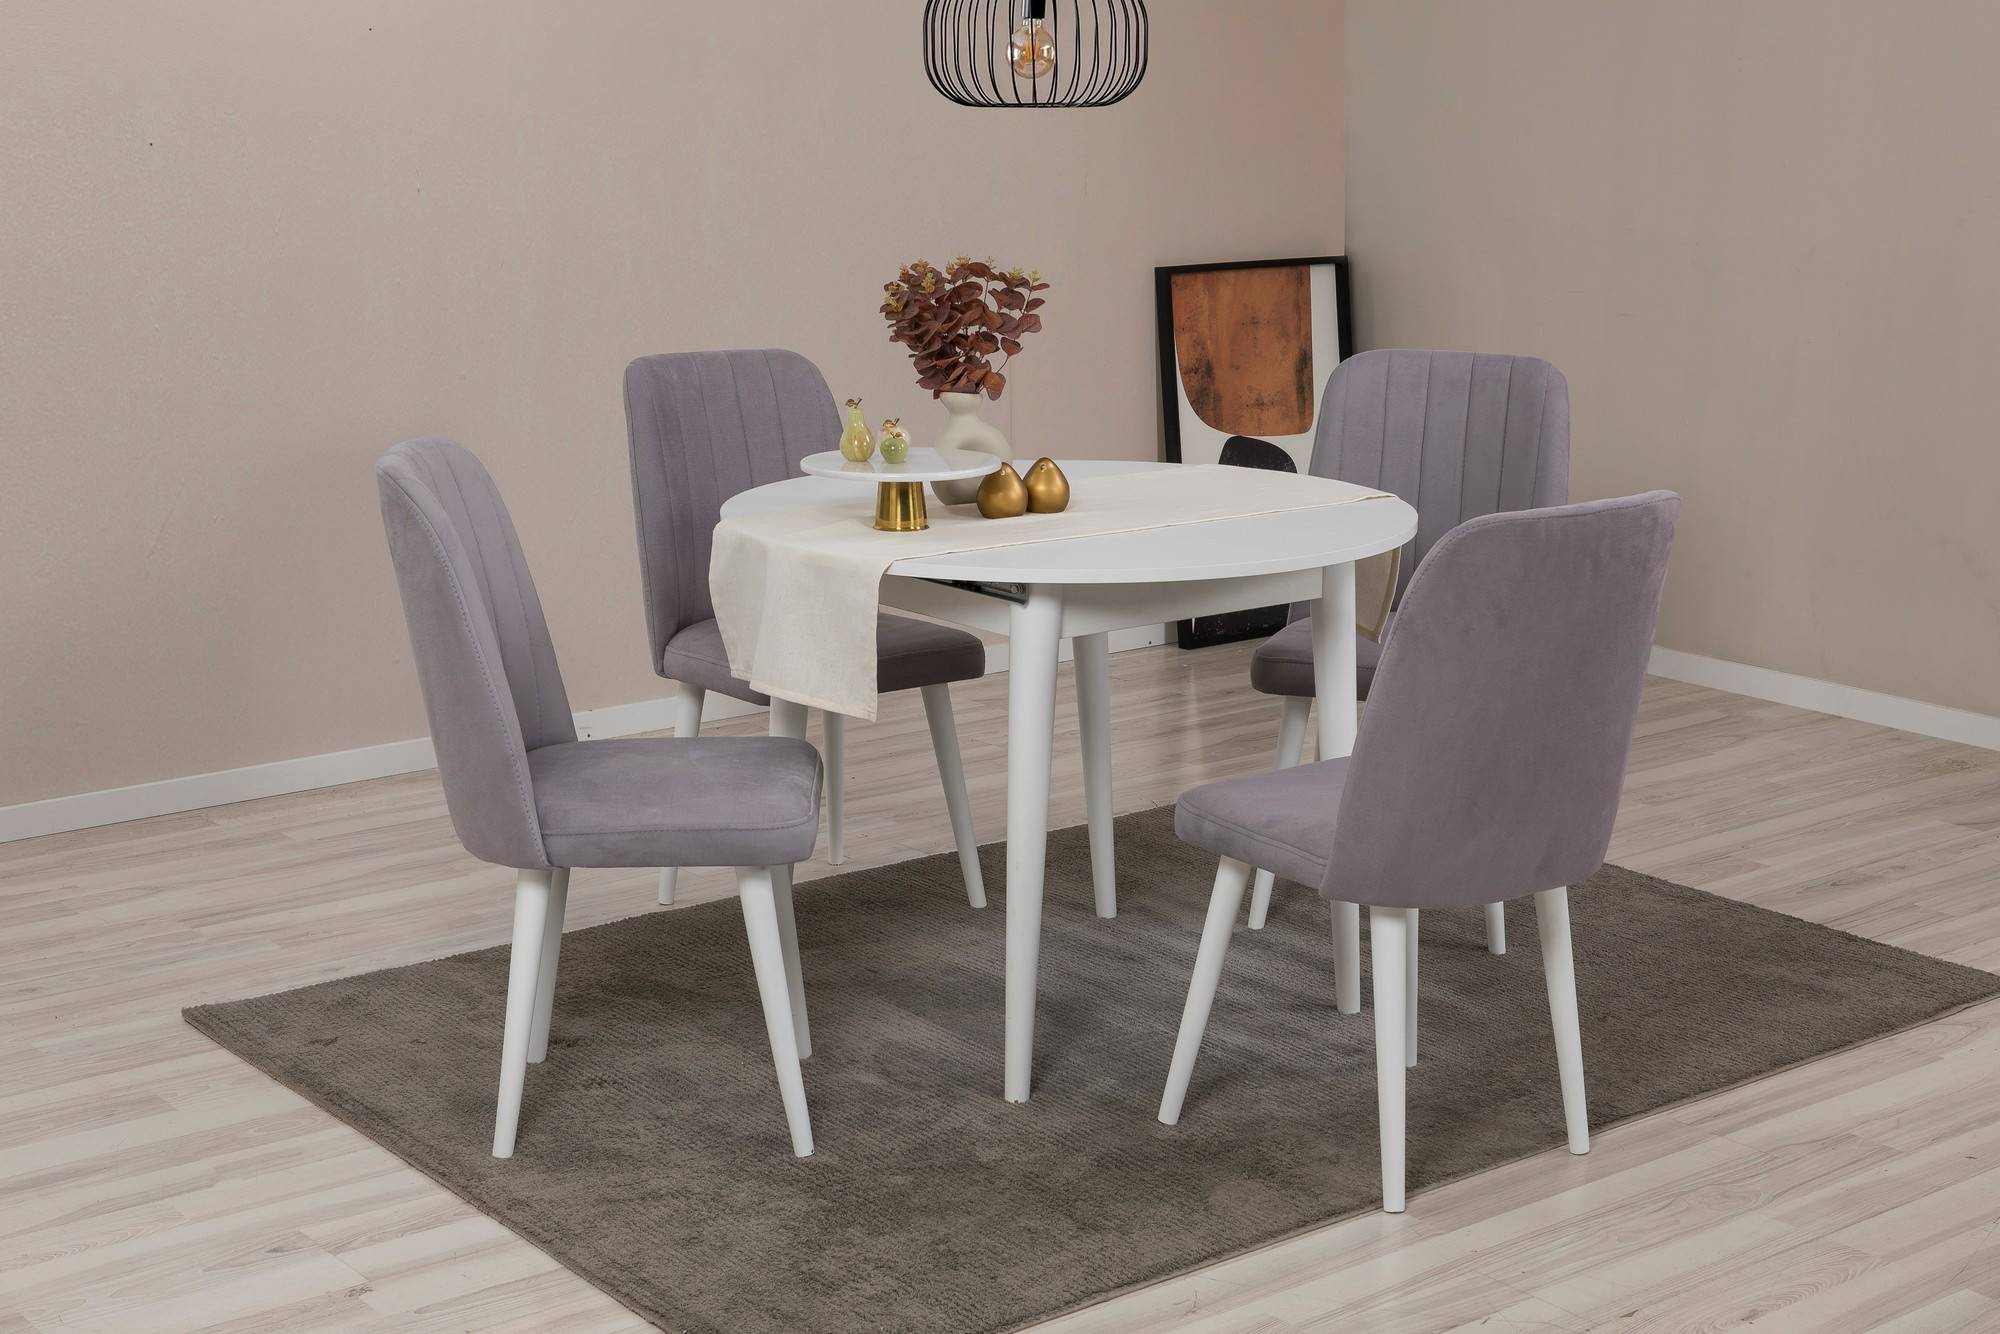 Juego de mesa redonda extensible y 4 sillas Malva de madera blanca y tela gris claro.